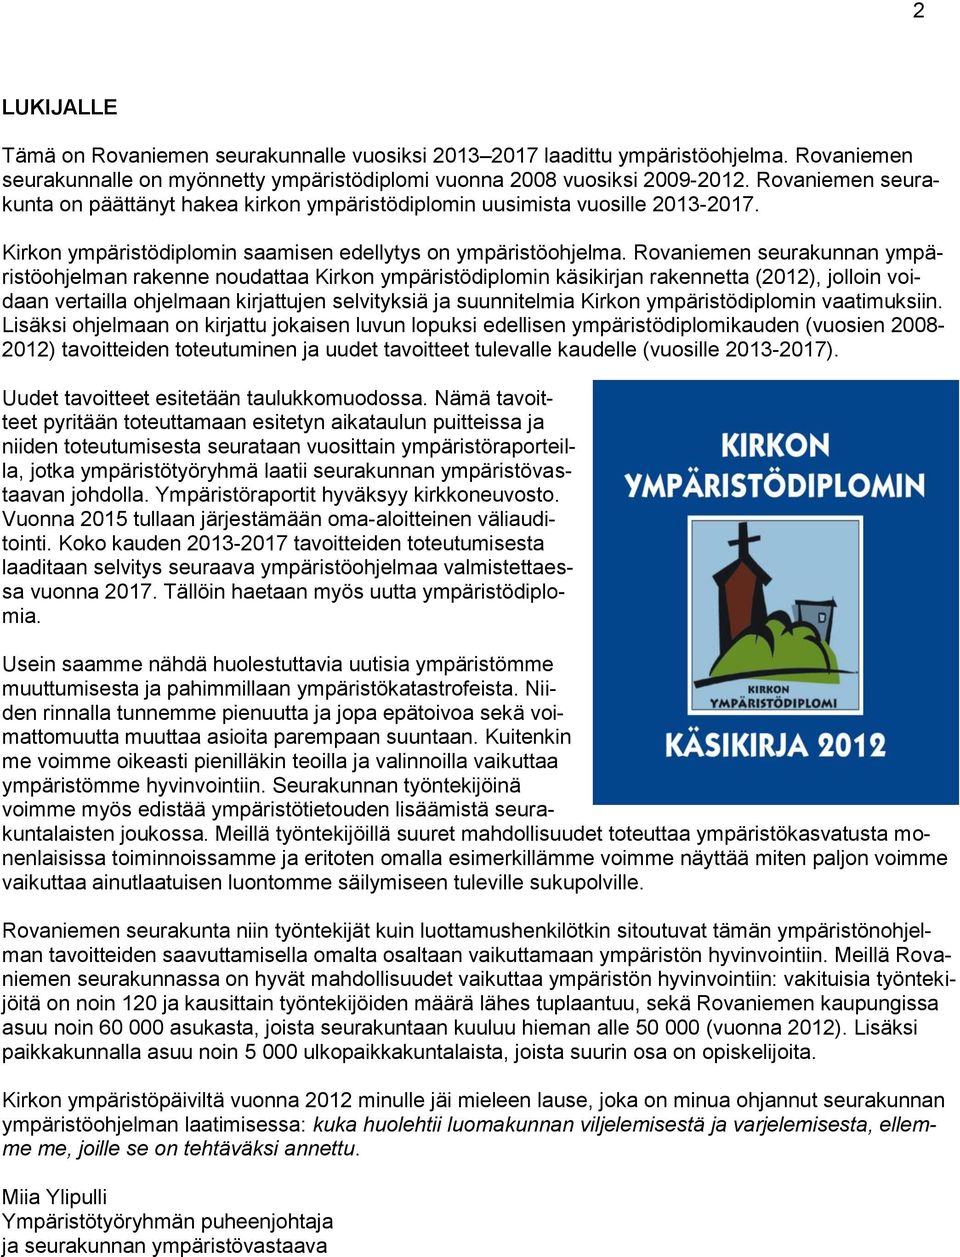 Rovaniemen seurakunnan ympäristöohjelman rakenne noudattaa Kirkon ympäristödiplomin käsikirjan rakennetta (2012), jolloin voidaan vertailla ohjelmaan kirjattujen selvityksiä ja suunnitelmia Kirkon